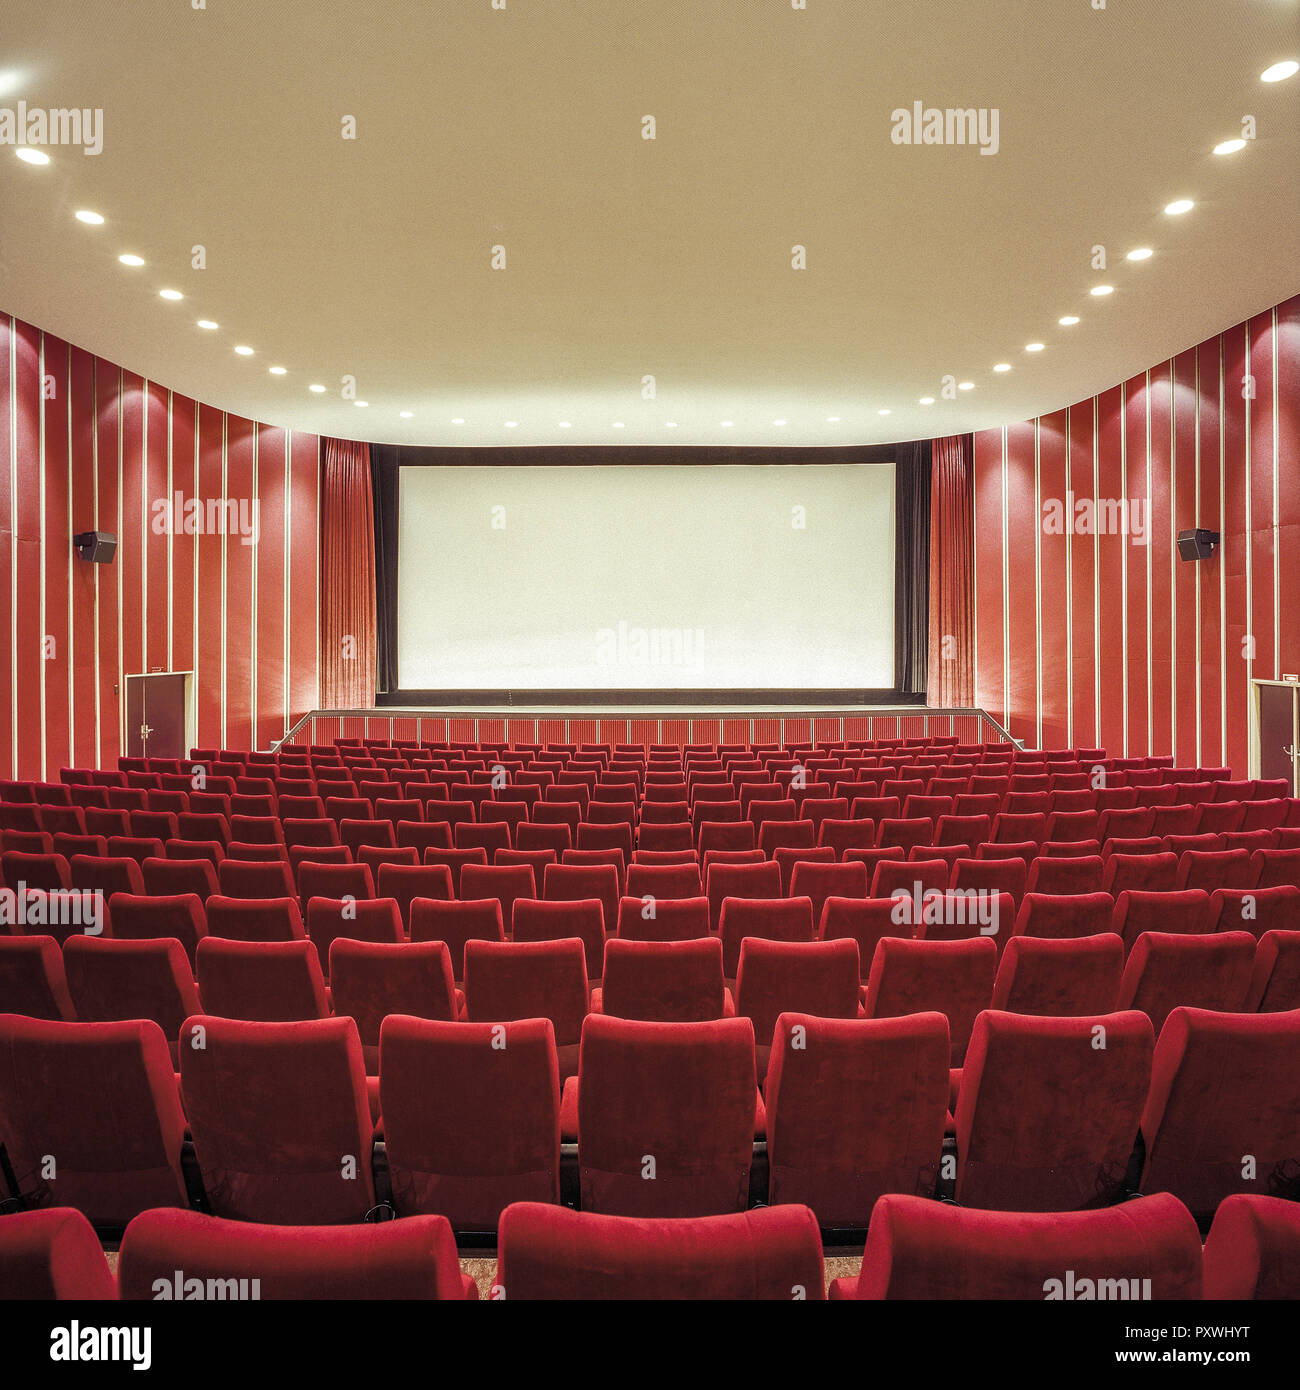 Kinosaal, Sitzreihen und Leinwand Stock Photo - Alamy